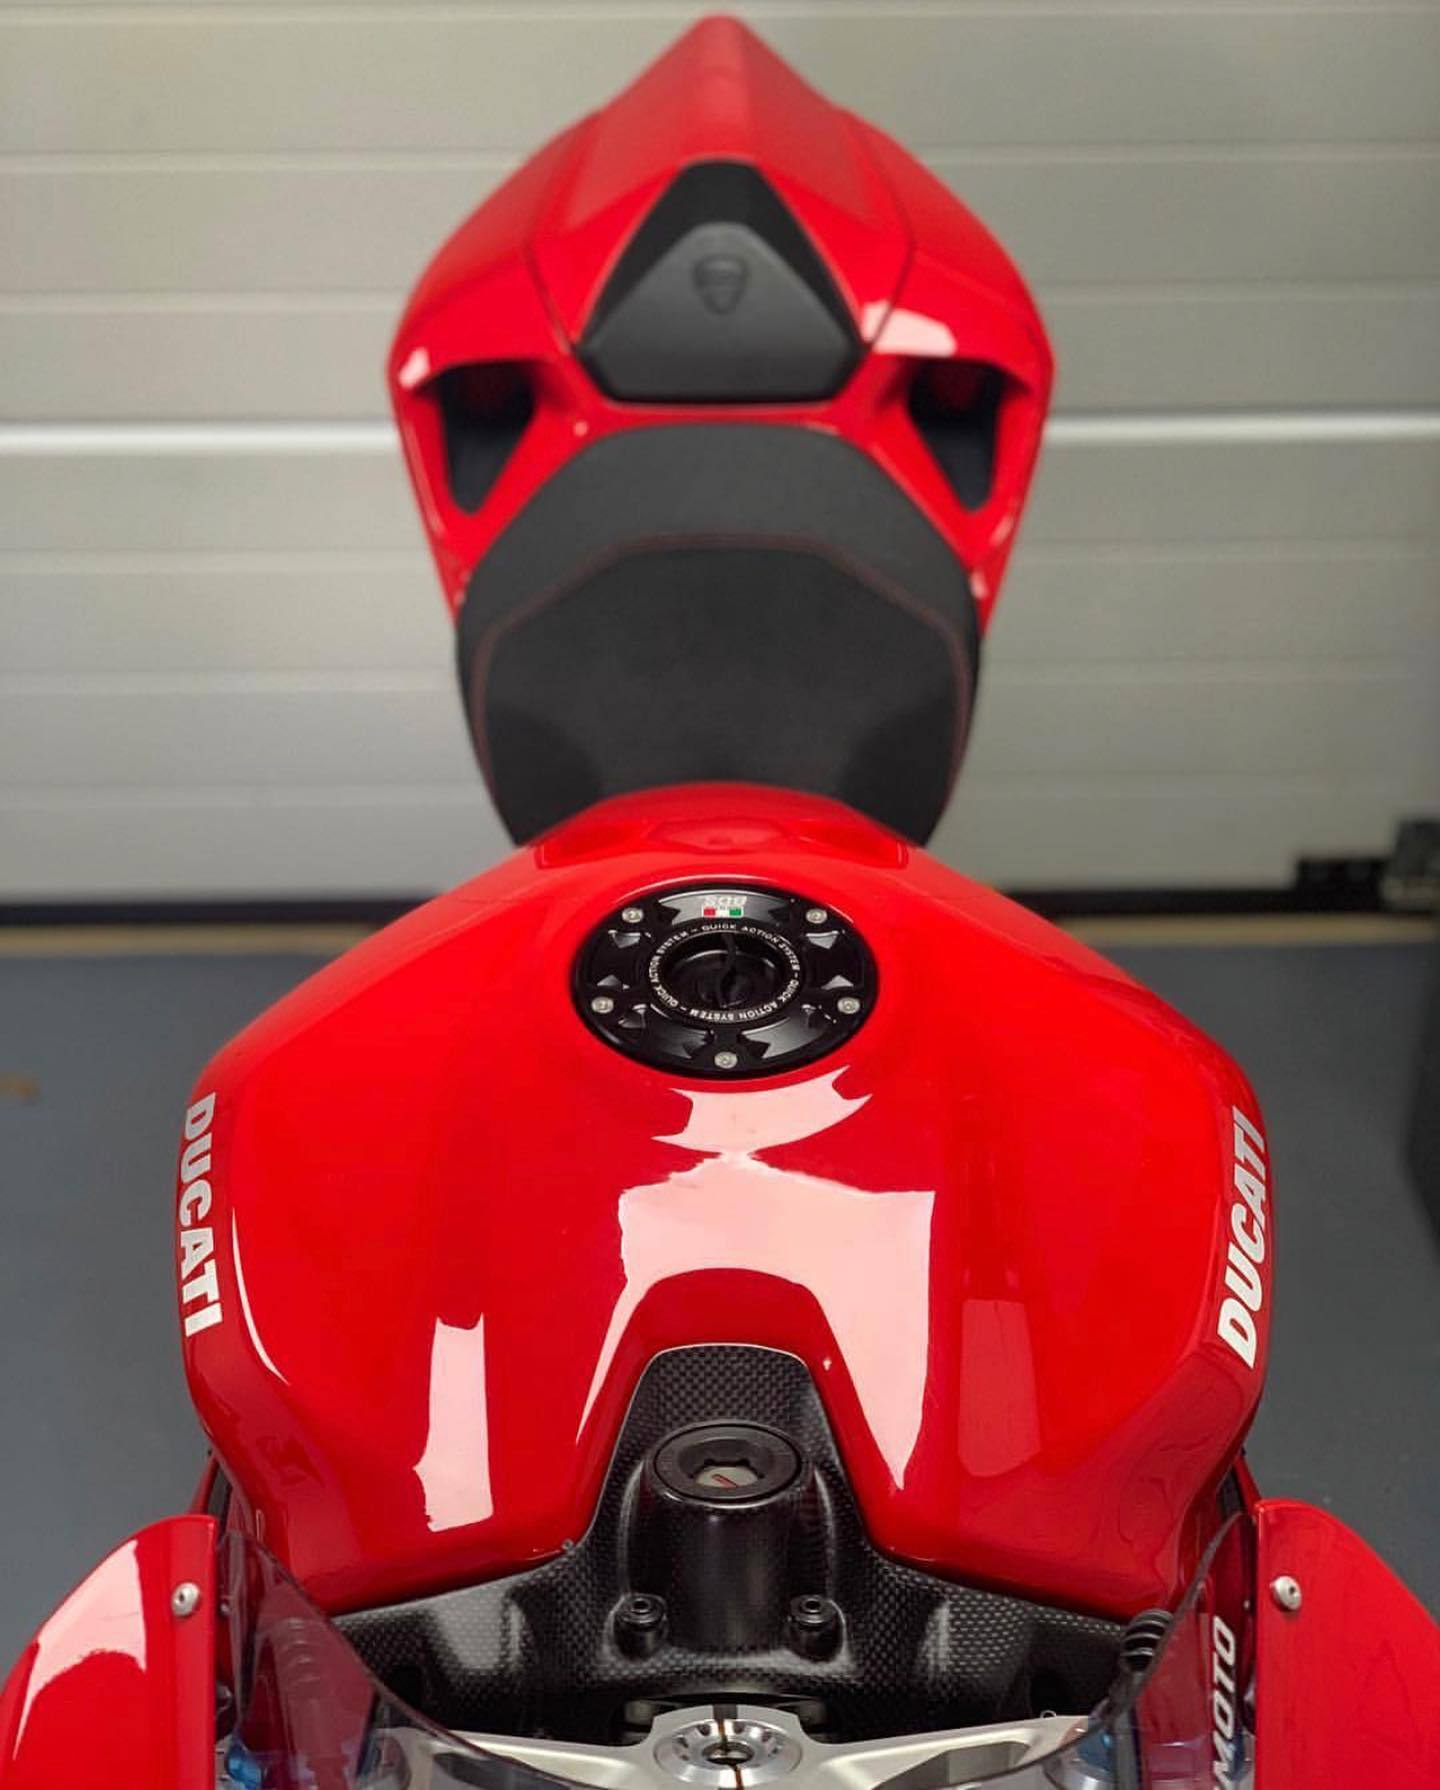 2014-2021 Ducati Monster 821 Aluminium Quick Action Fuel Cap by TWM